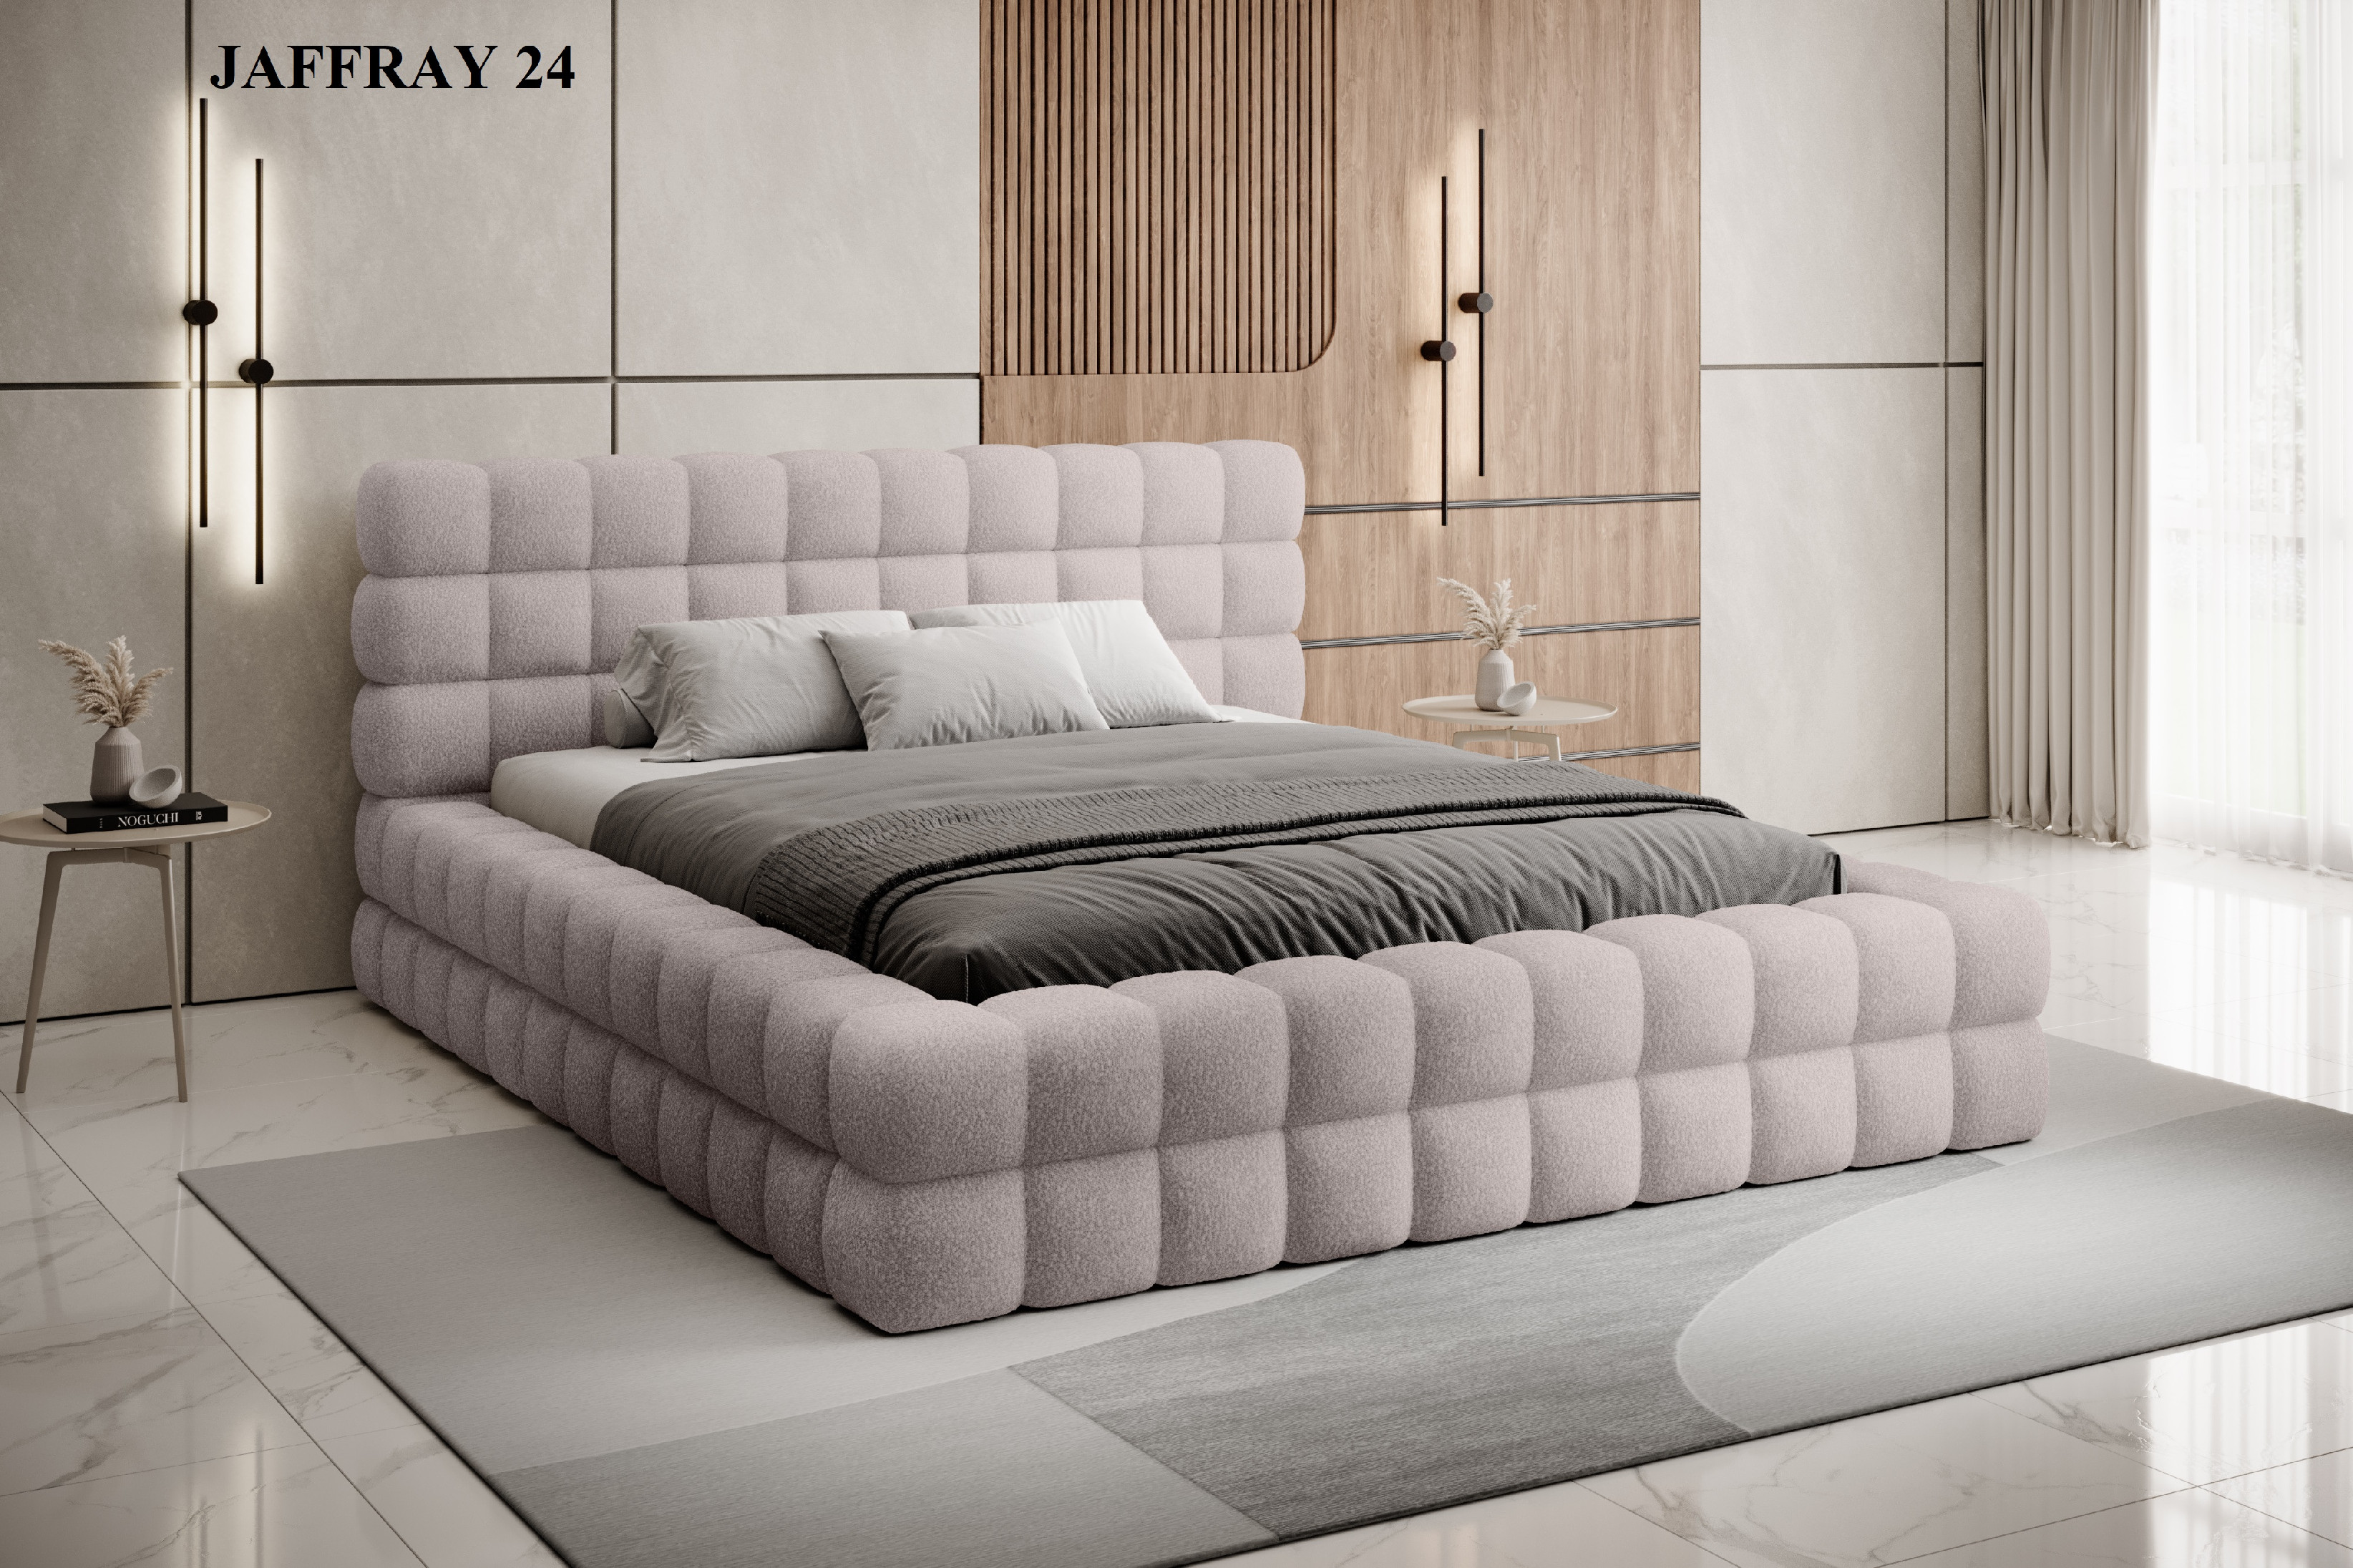 Čalouněná postel DIZZLE 180x200 cm Jaffray 24